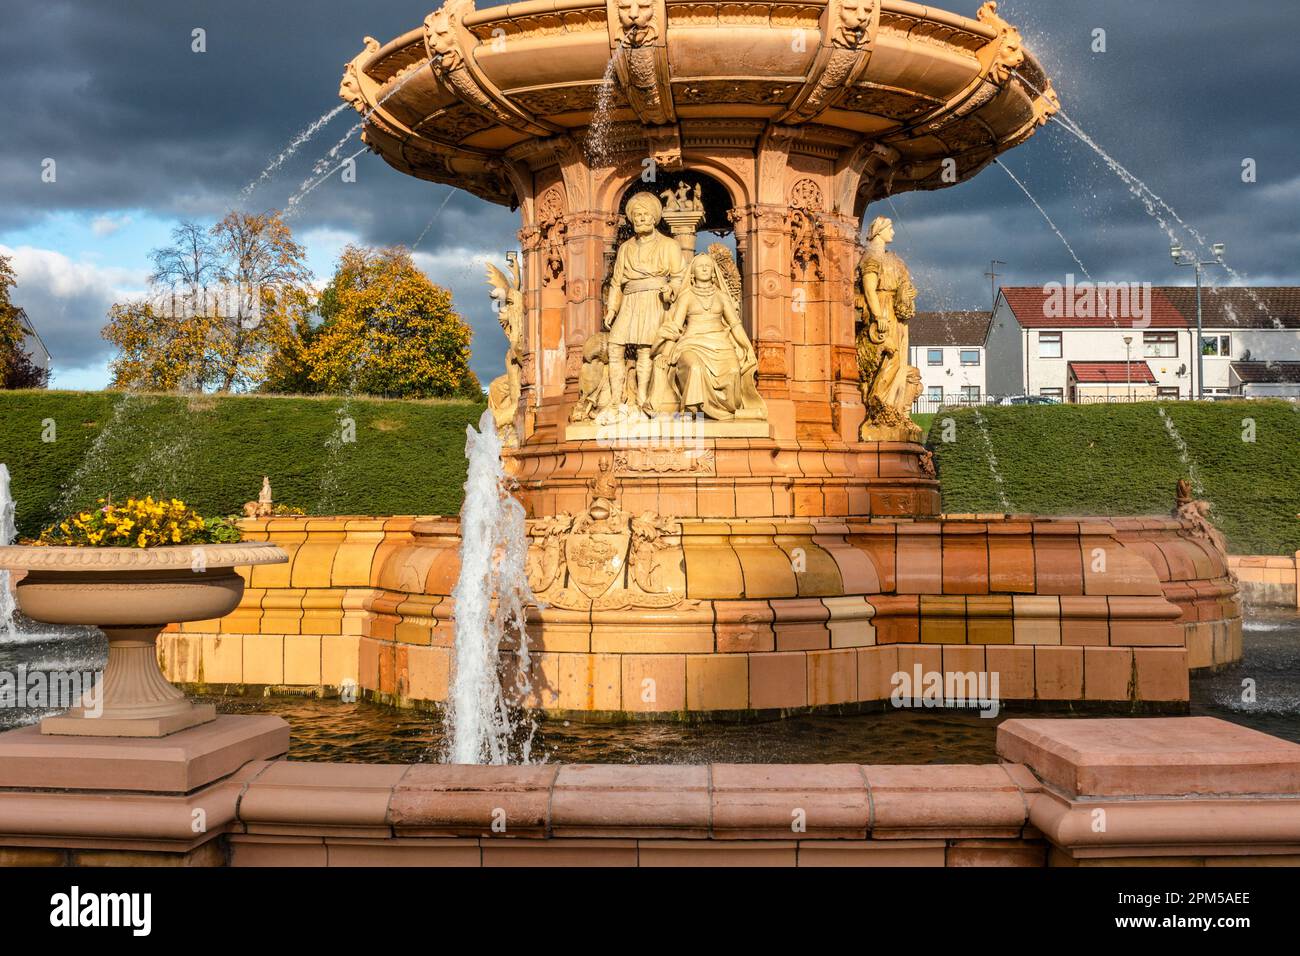 Dettaglio dalla Fontana di Doulton accanto al Palazzo del Popolo a Glasgow Green, Glasgow, Scozia, Regno Unito Foto Stock